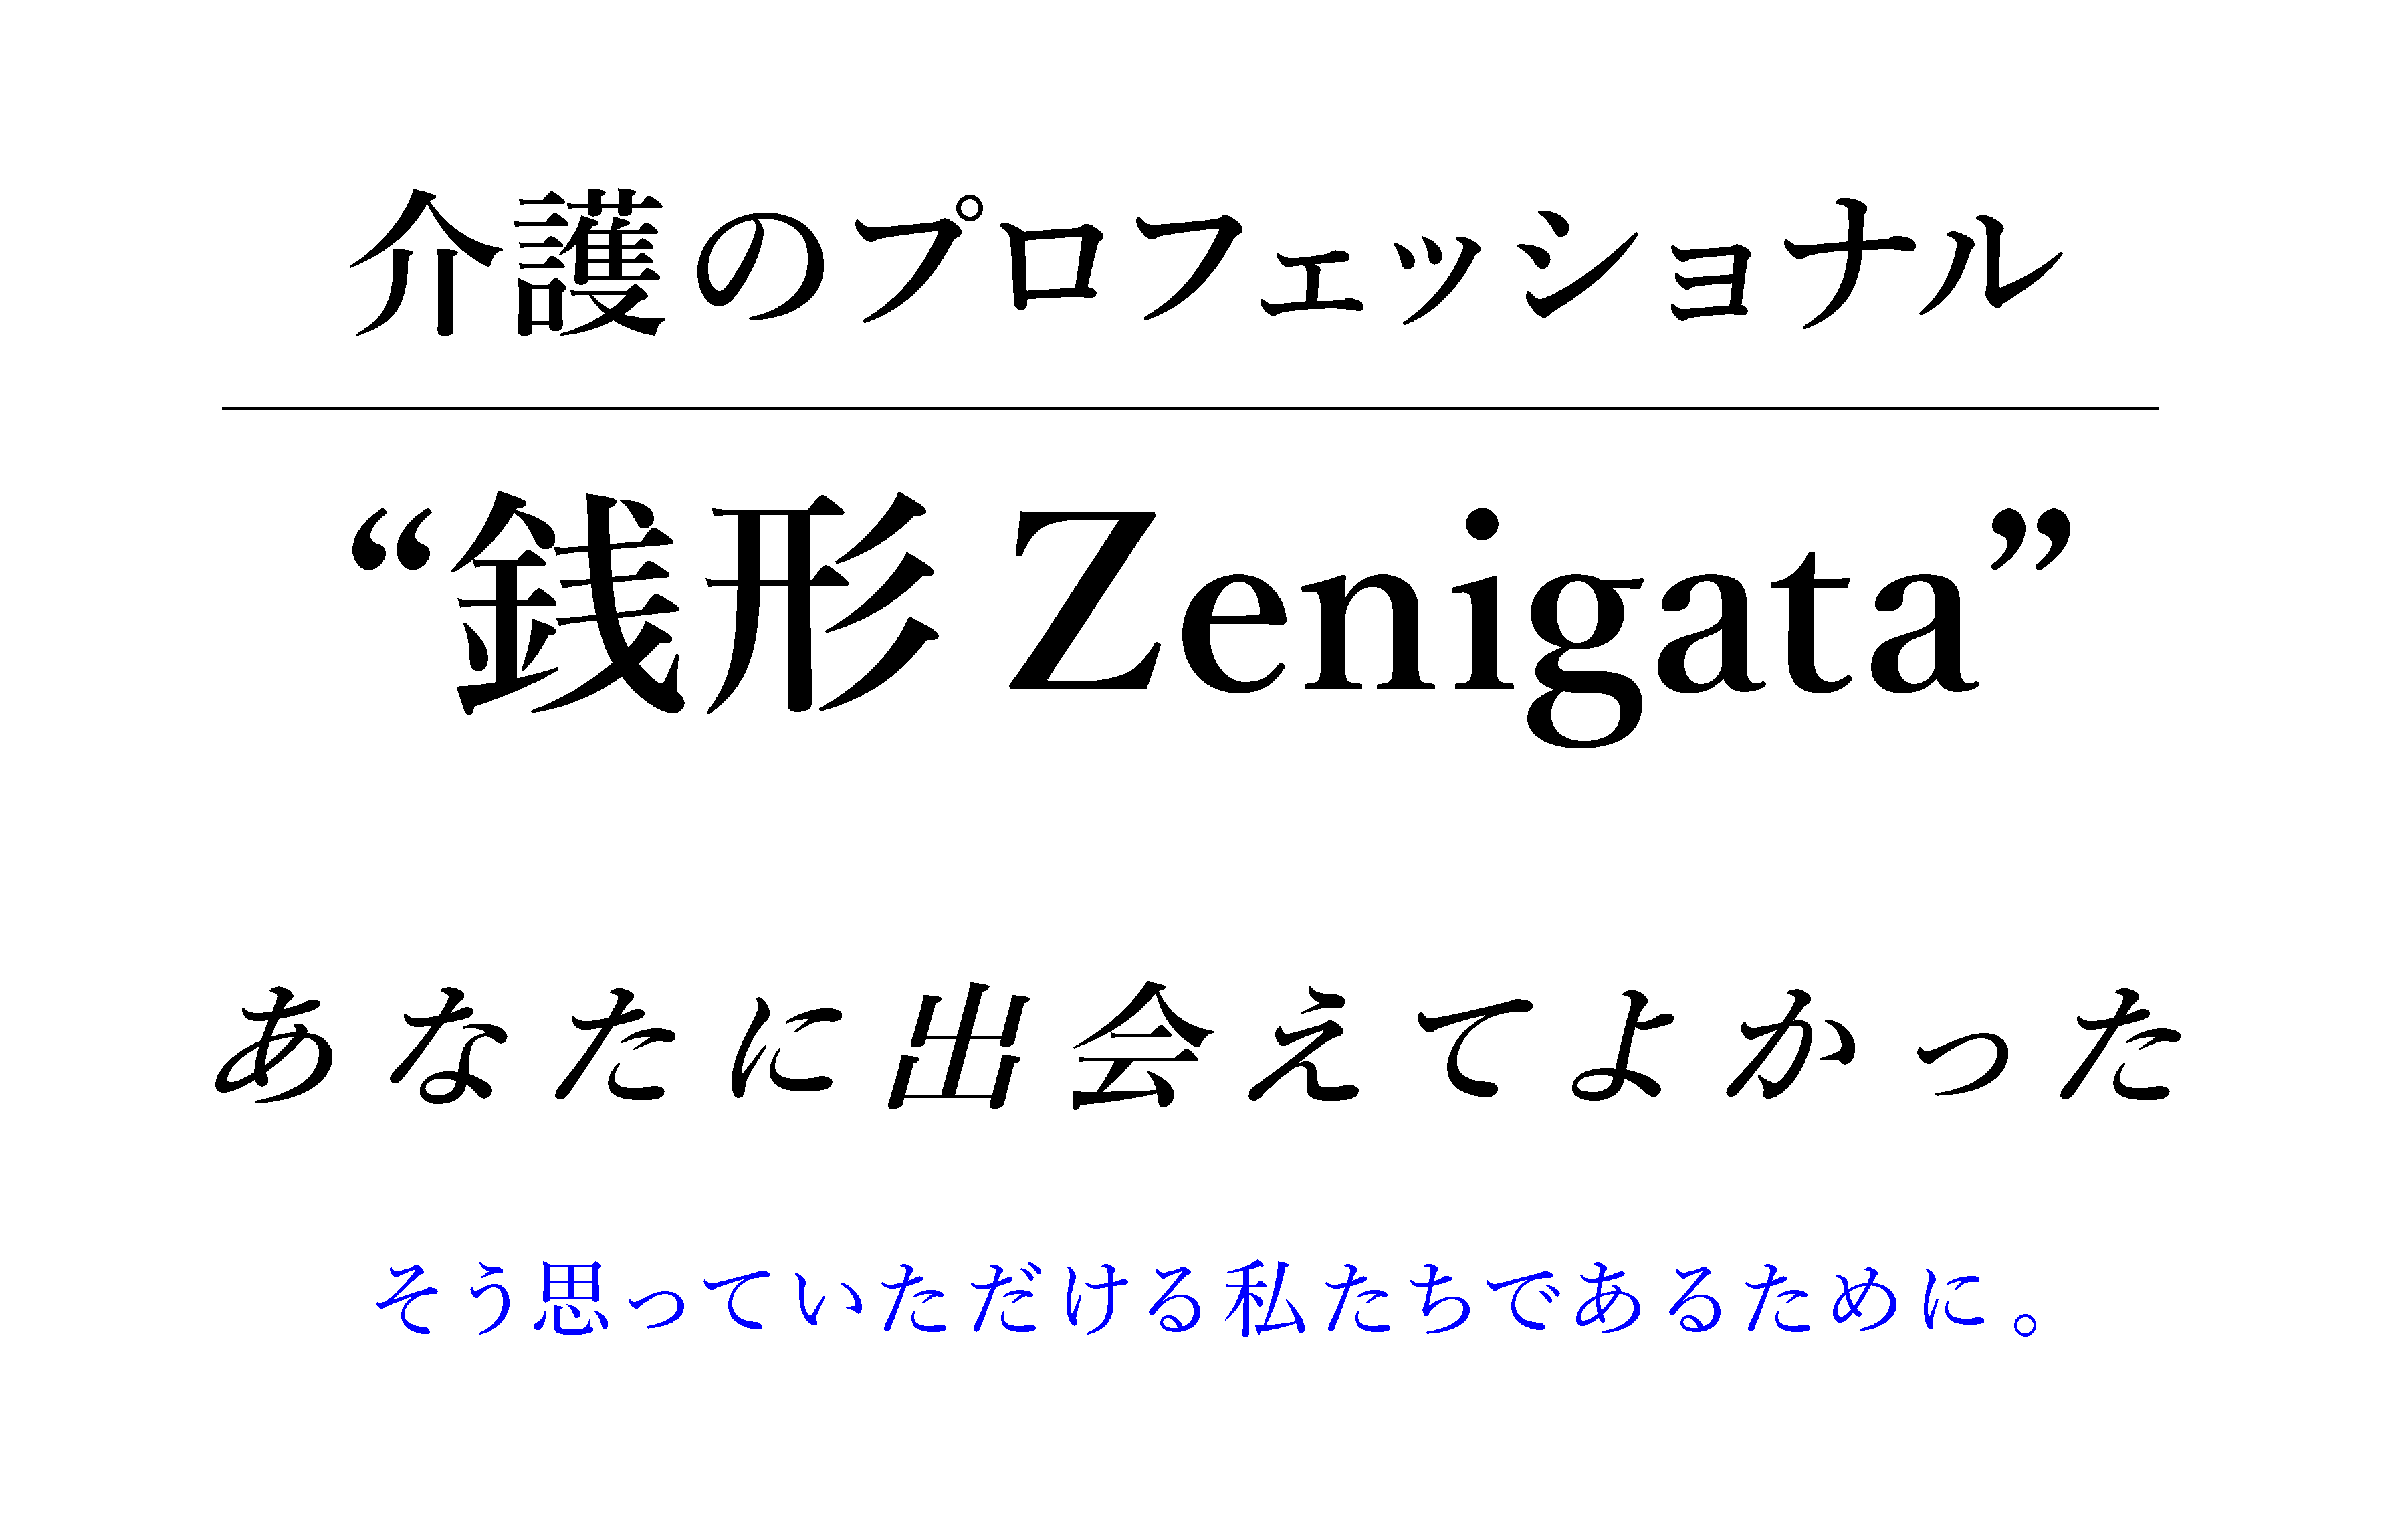 介護のプロフェッショナル “銭形 Zenigata”